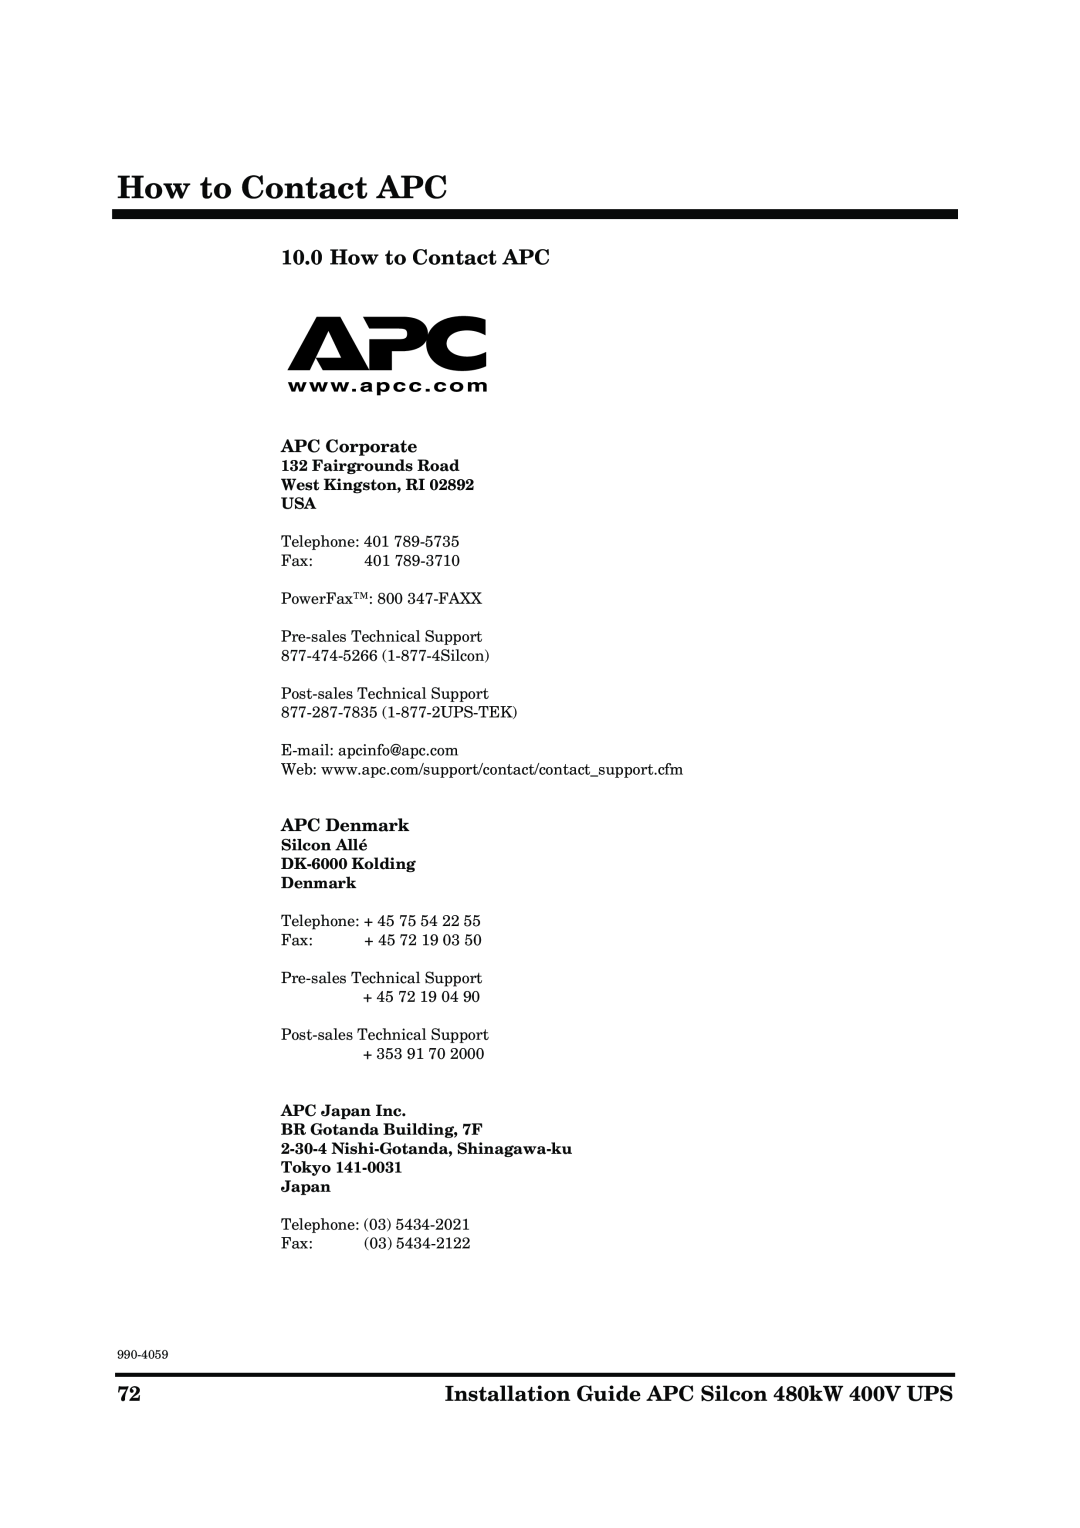 American Power Conversion 480kW 400V How to Contact APC, APC Corporate, APC Denmark, Silcon Allé DK-6000 Kolding Denmark 